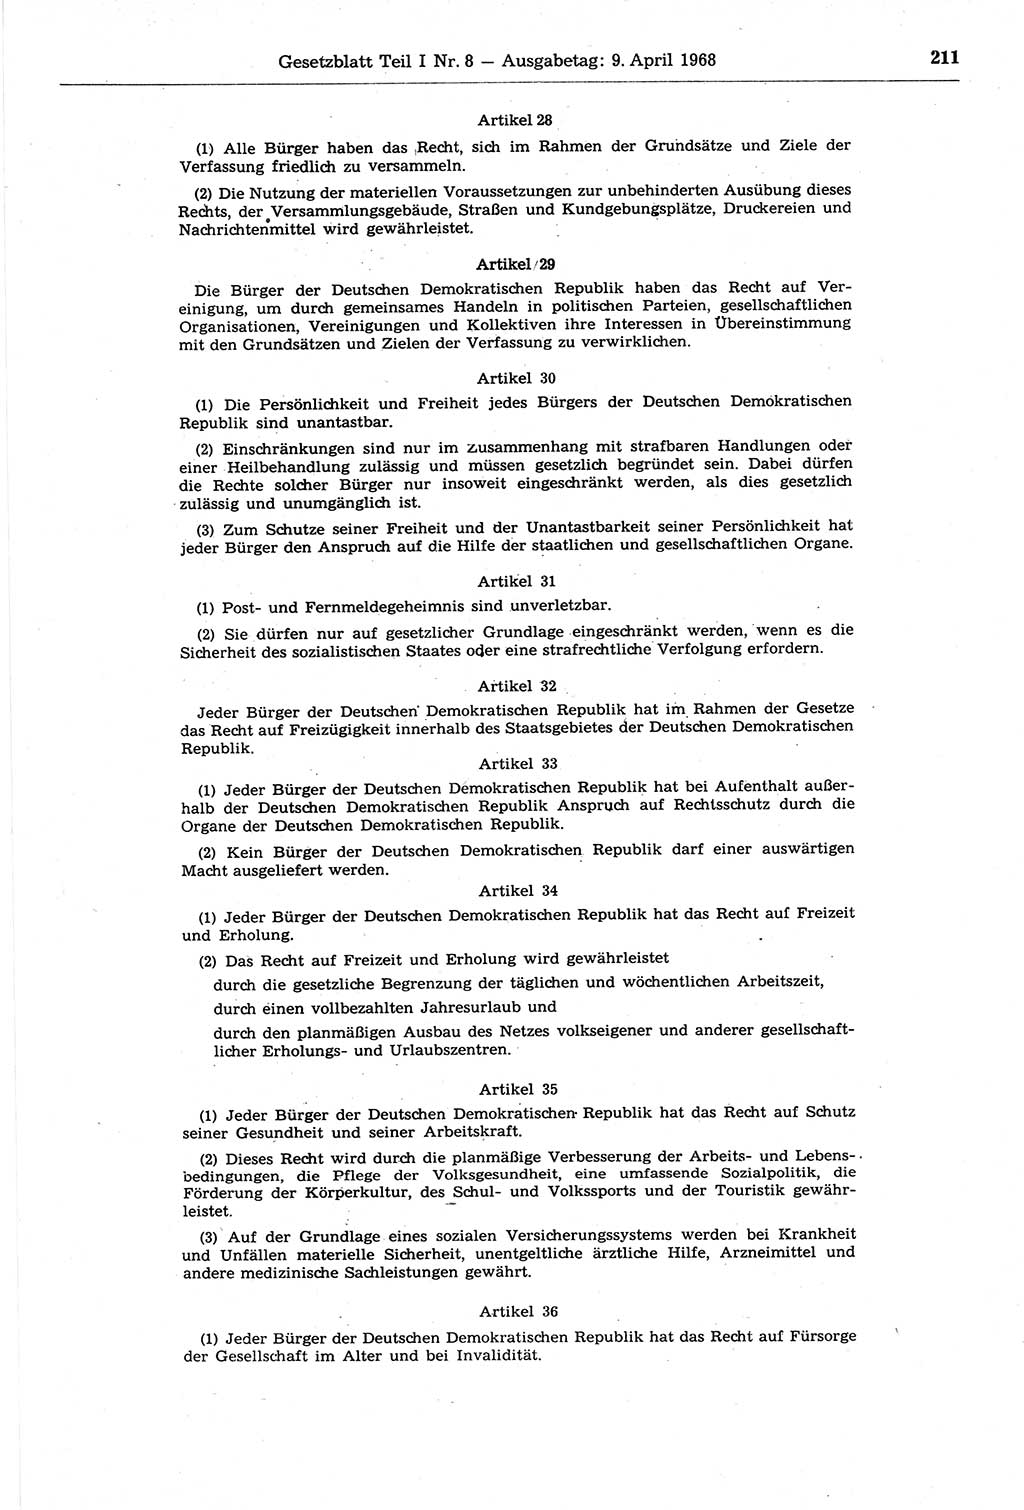 Gesetzblatt (GBl.) der Deutschen Demokratischen Republik (DDR) Teil Ⅰ 1968, Seite 211 (GBl. DDR Ⅰ 1968, S. 211)